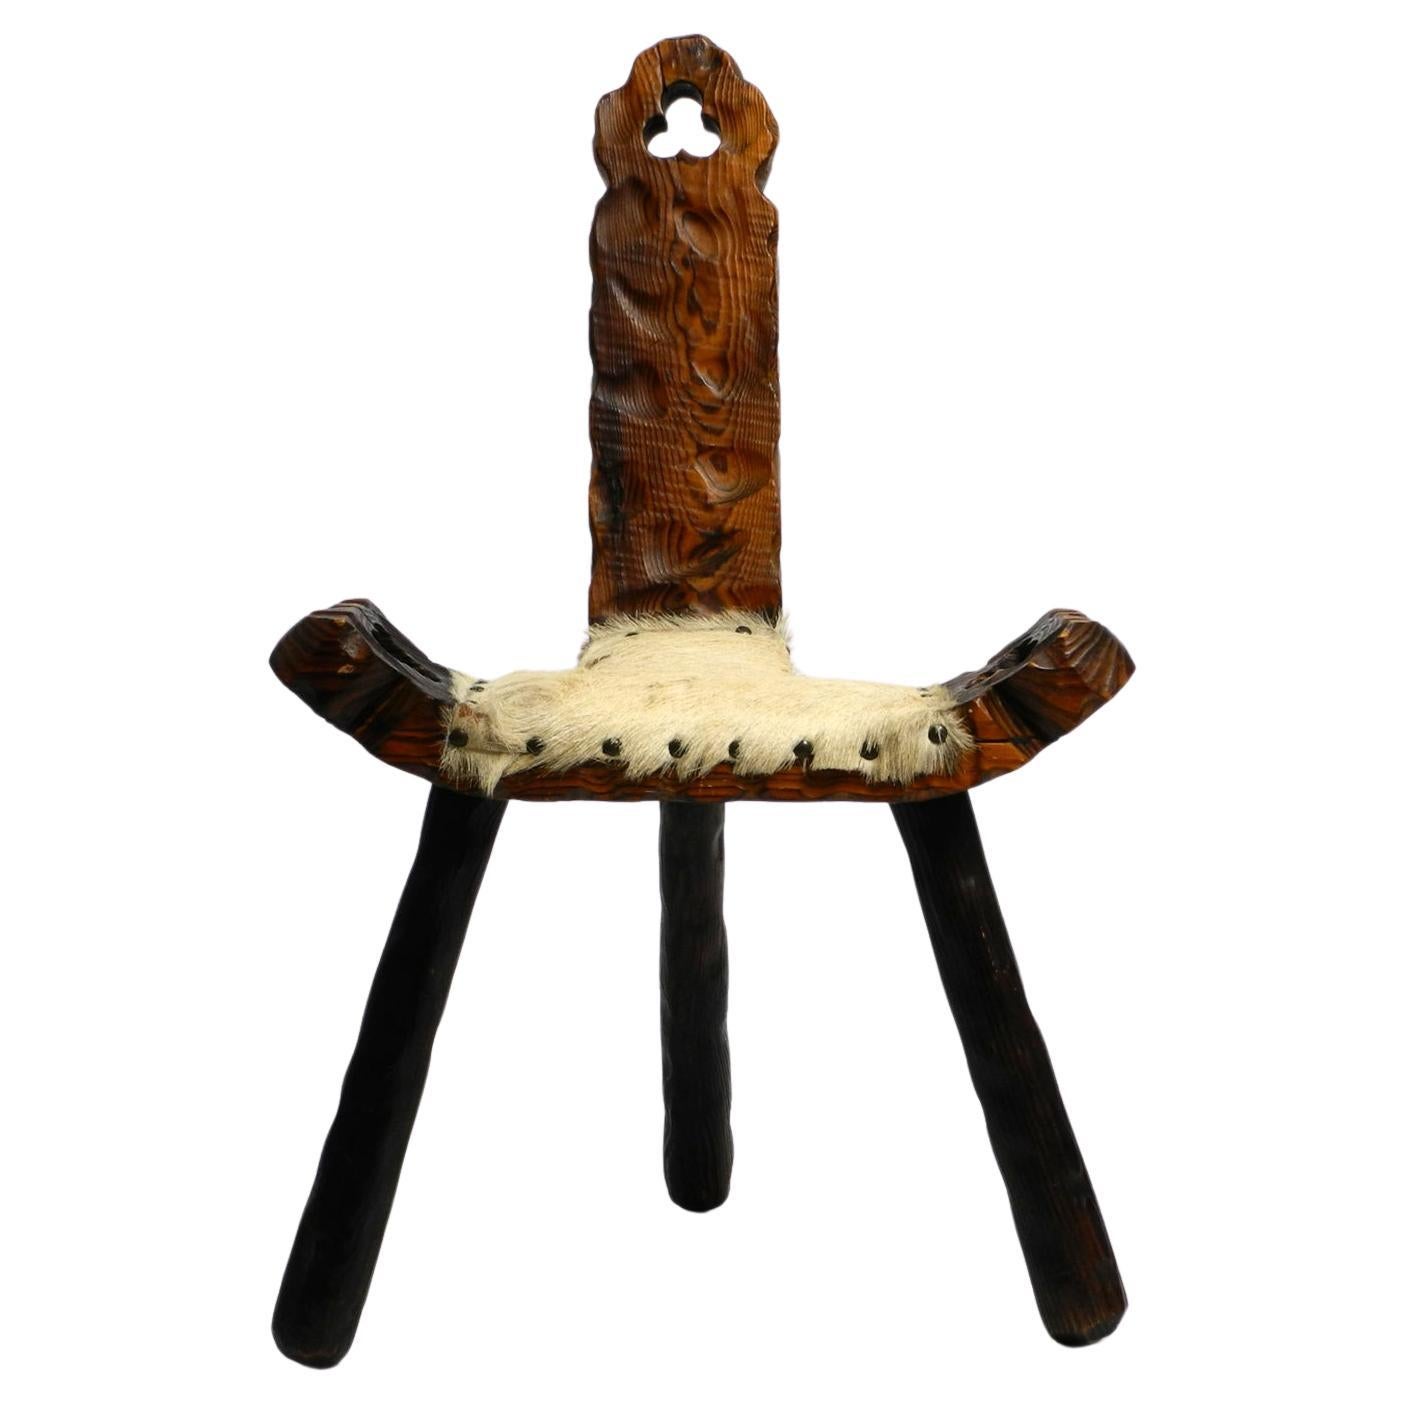 Tabouret à trois pieds des années 1950 en Wood Wood massif noir-brun avec assise en peau de vache. en vente